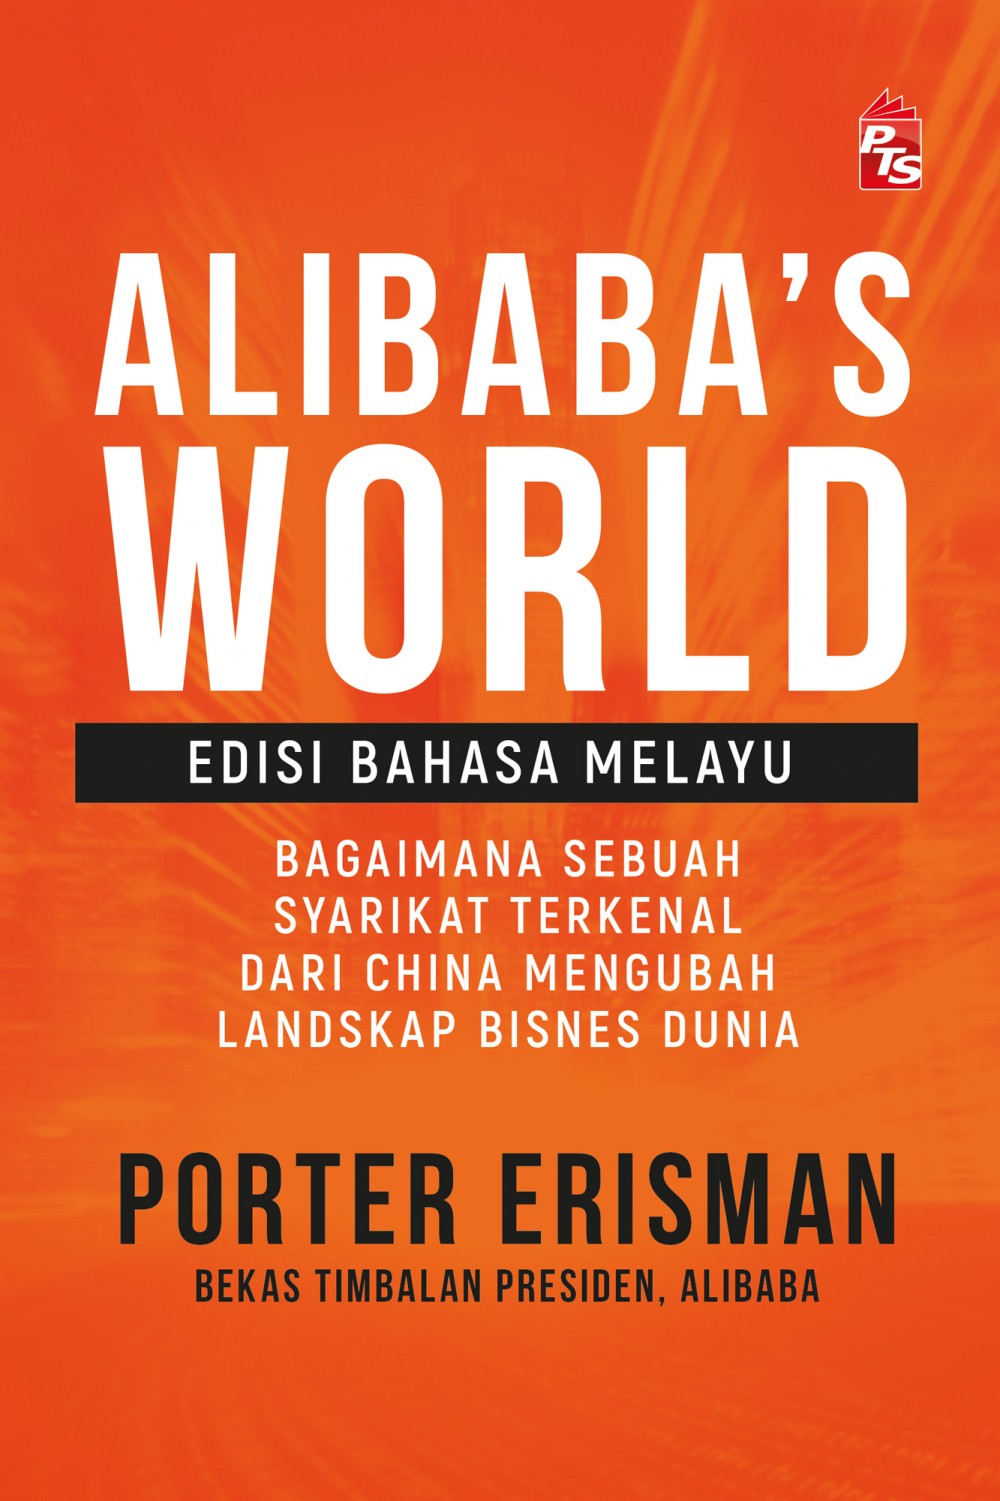 Ulasan Buku – Alibaba World’s Edisi Bahasa Melayu